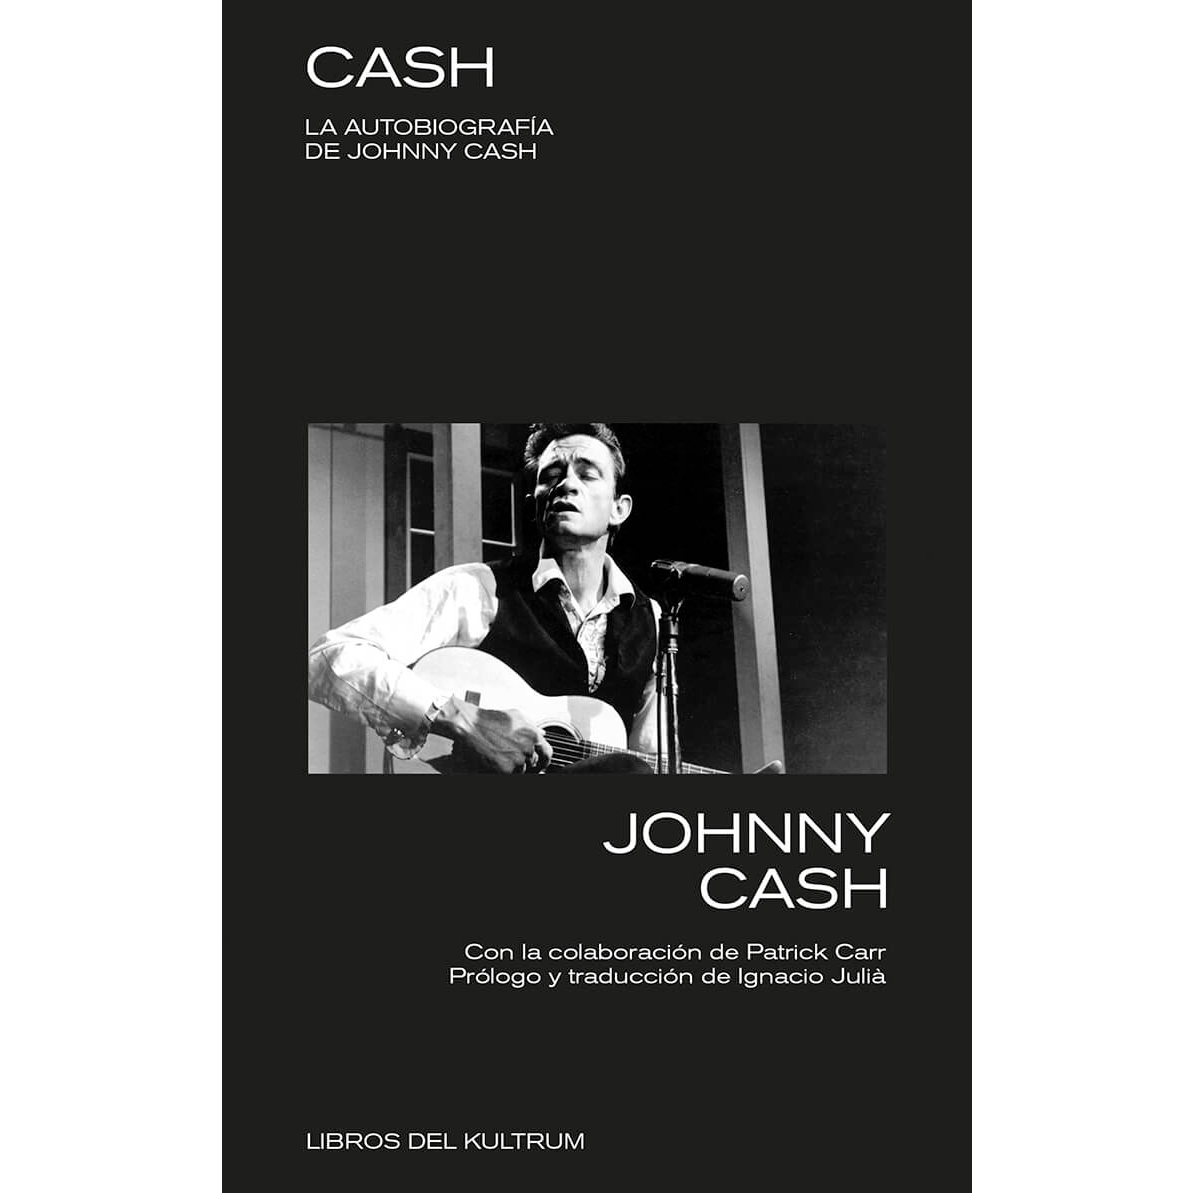 "Cash" la autobiografía de Johnny Cash